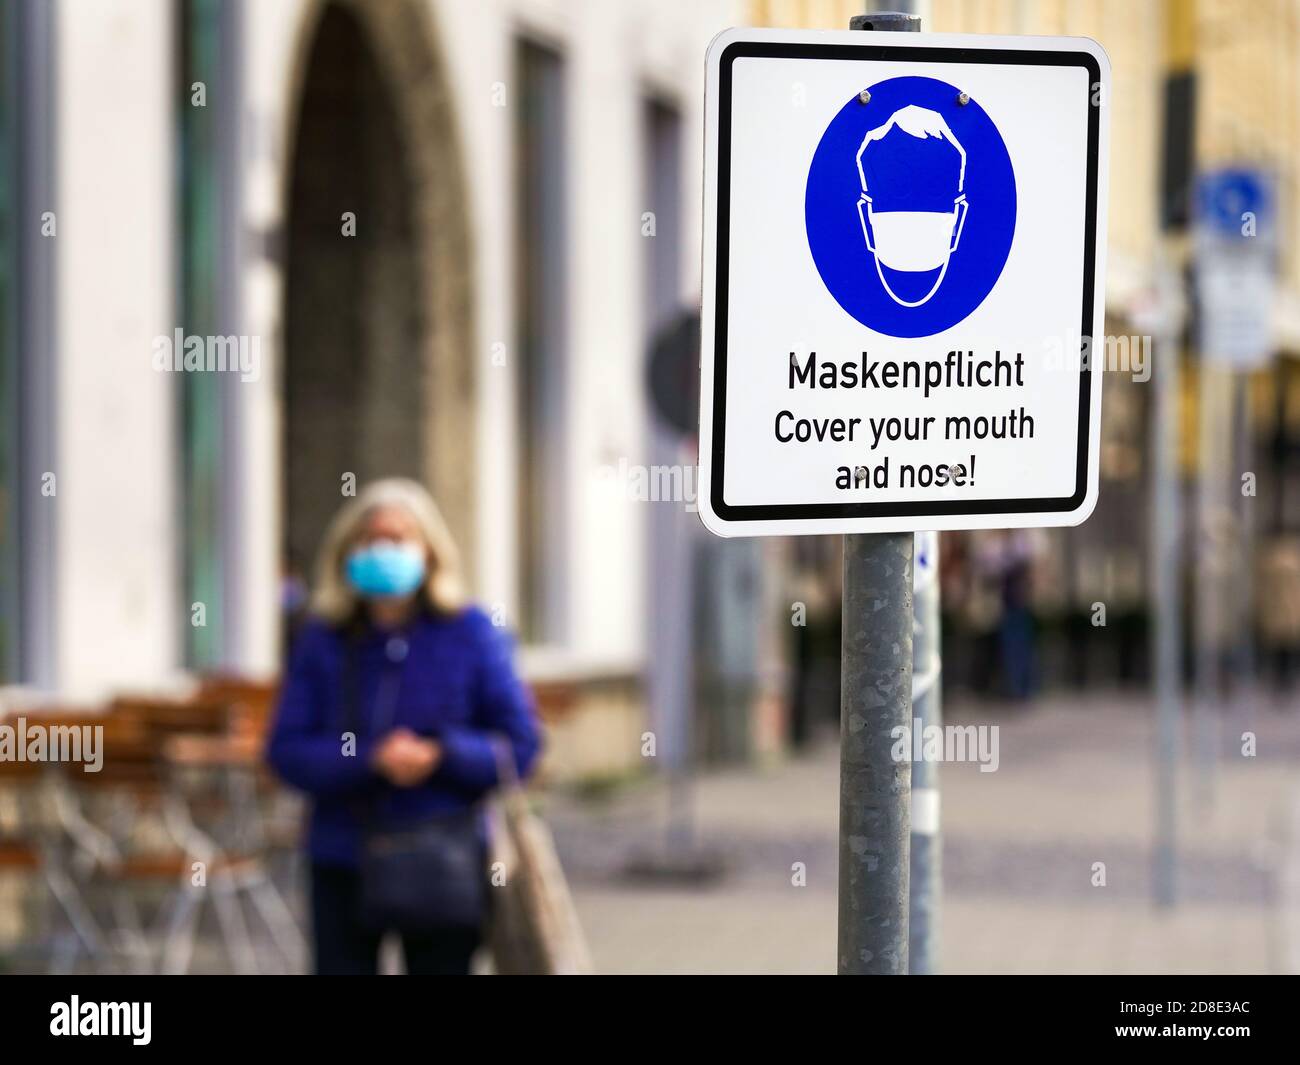 München, 26. Oktober 2020: Ein Schild mit einem Maskenpiktogramm und der Aufschrift "Maskenanforderung" befindet sich auf dem Max-Joseph-Platz in München, Bayern, Deutschland --- München, 26.10.2020: Ein Schild mit Masken-Piktogramm und der Aufschrift "Maskenpflicht" steht am Münchener Max-Joseph-Platz, München, Bayern, Deutschland Stockfoto